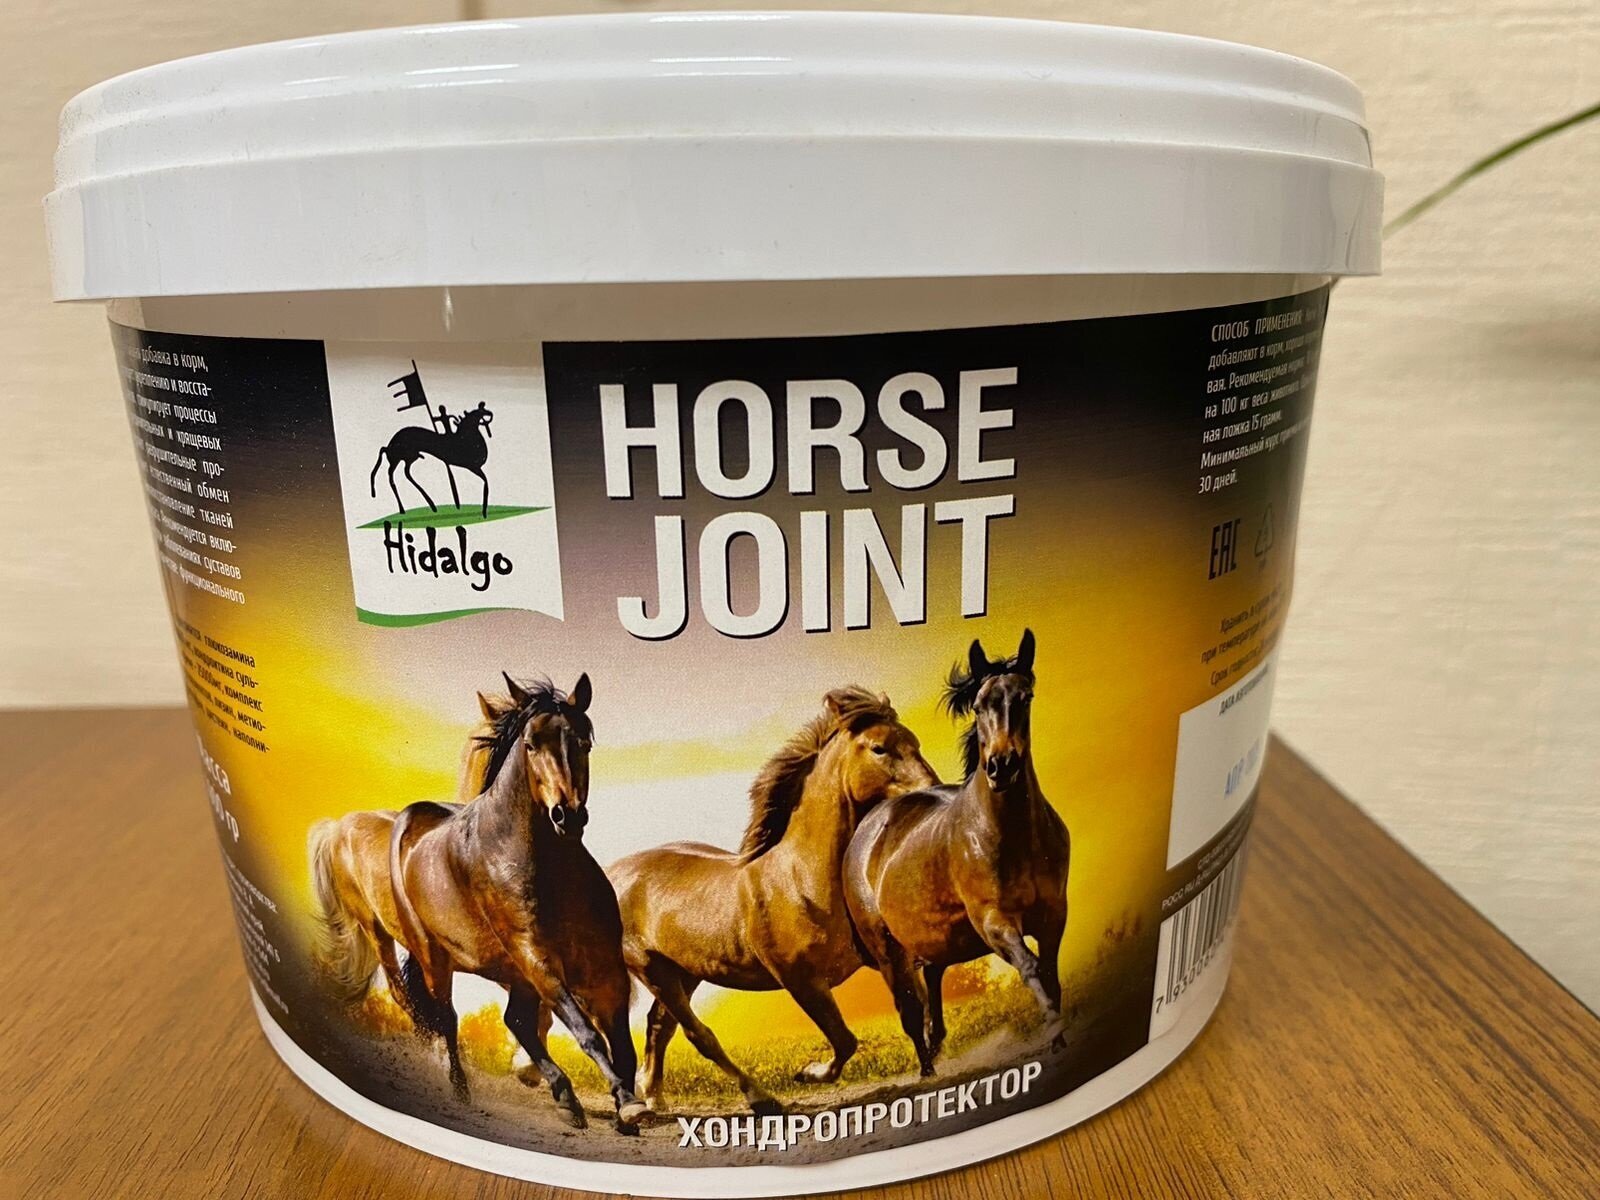 Идальго: Horse Joint, хондропротектор, 500 гр. - фотография № 1